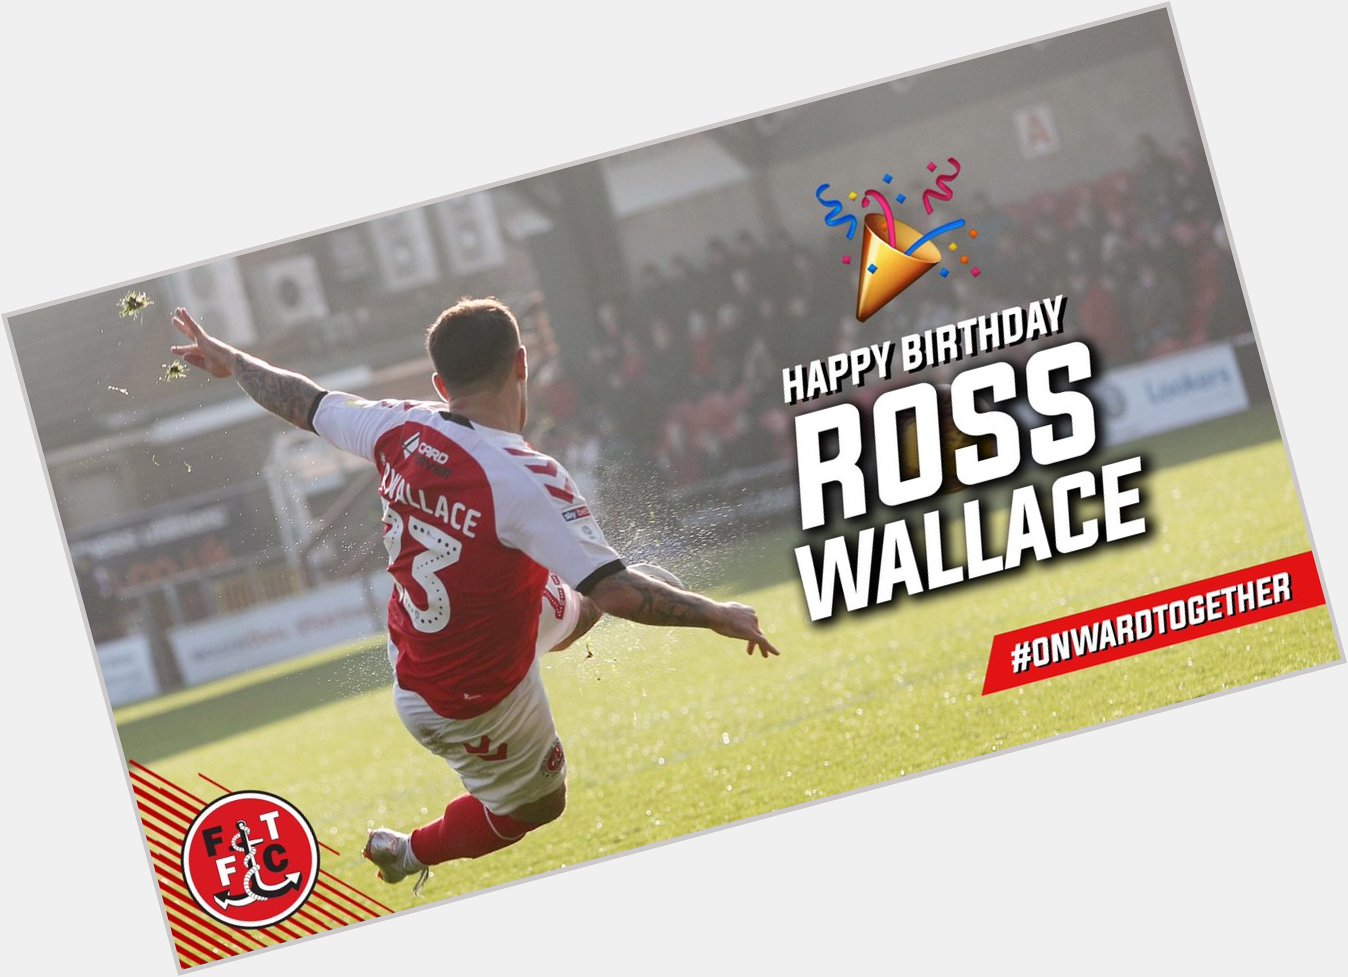 Happy birthday, Ross Wallace!  